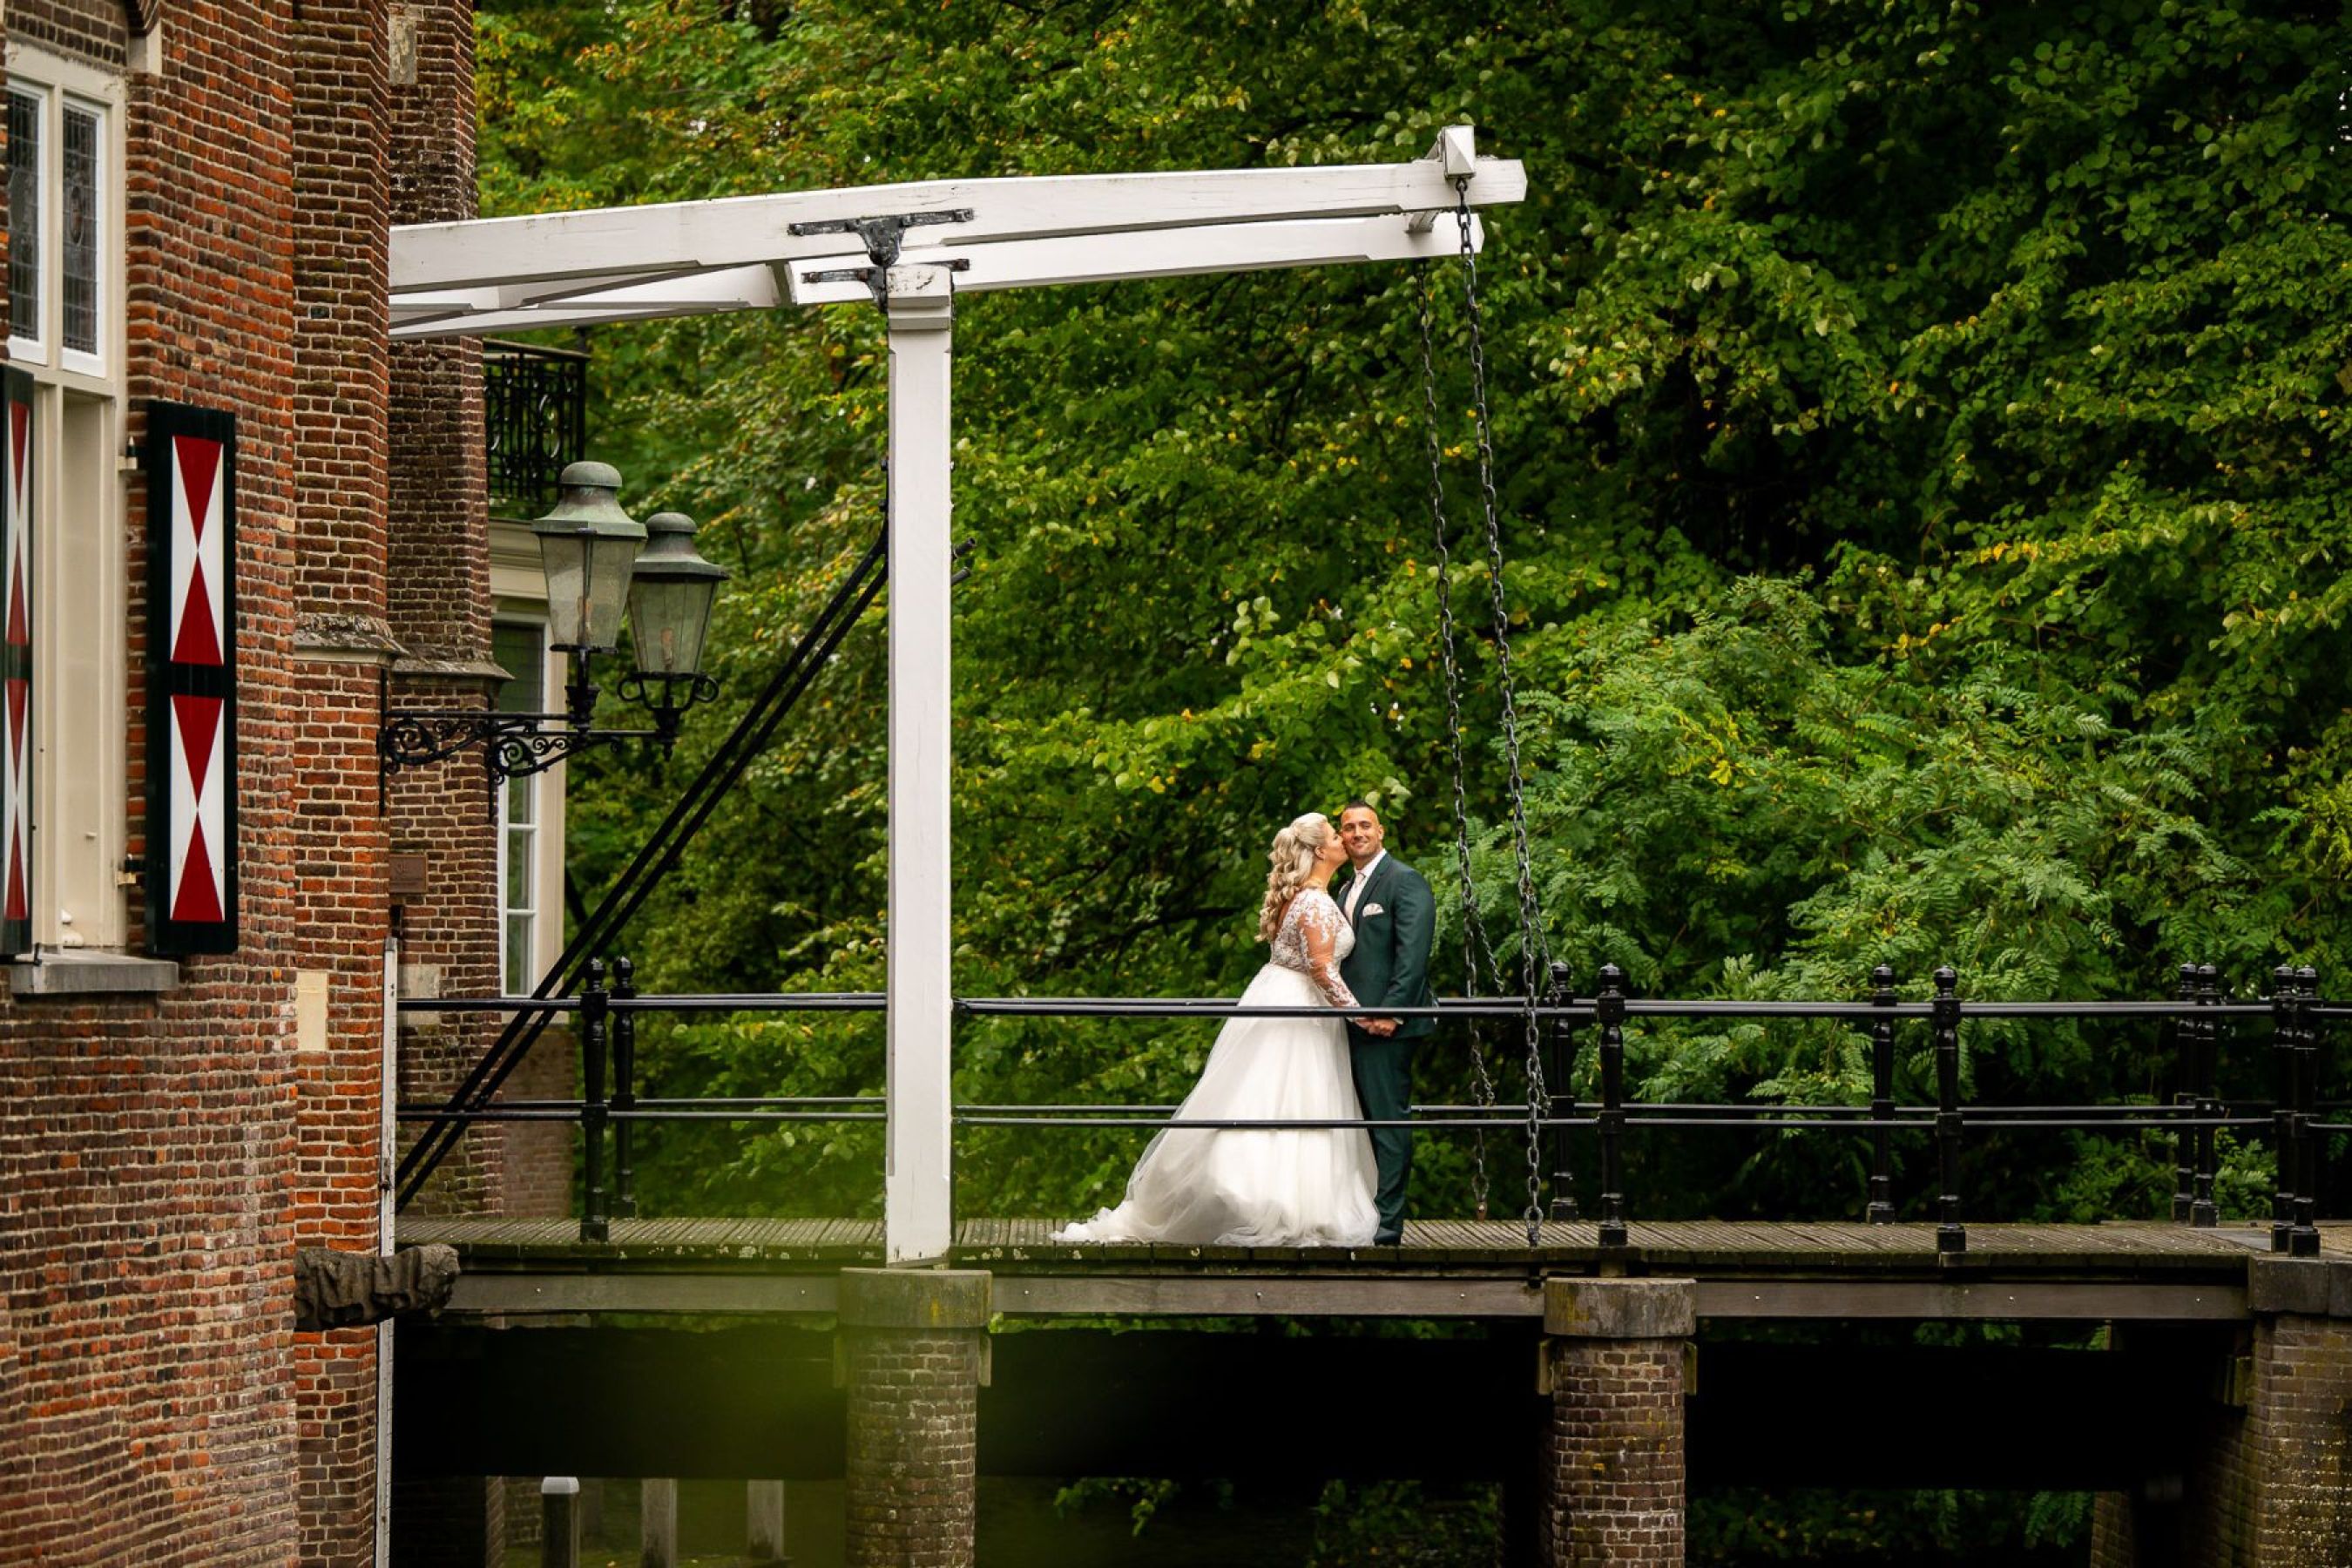 Willem-Adrienne-Jan-van-de-Maat-Bruidsfotografie-Trouwfotografie-kasteel-Maurick-Vught